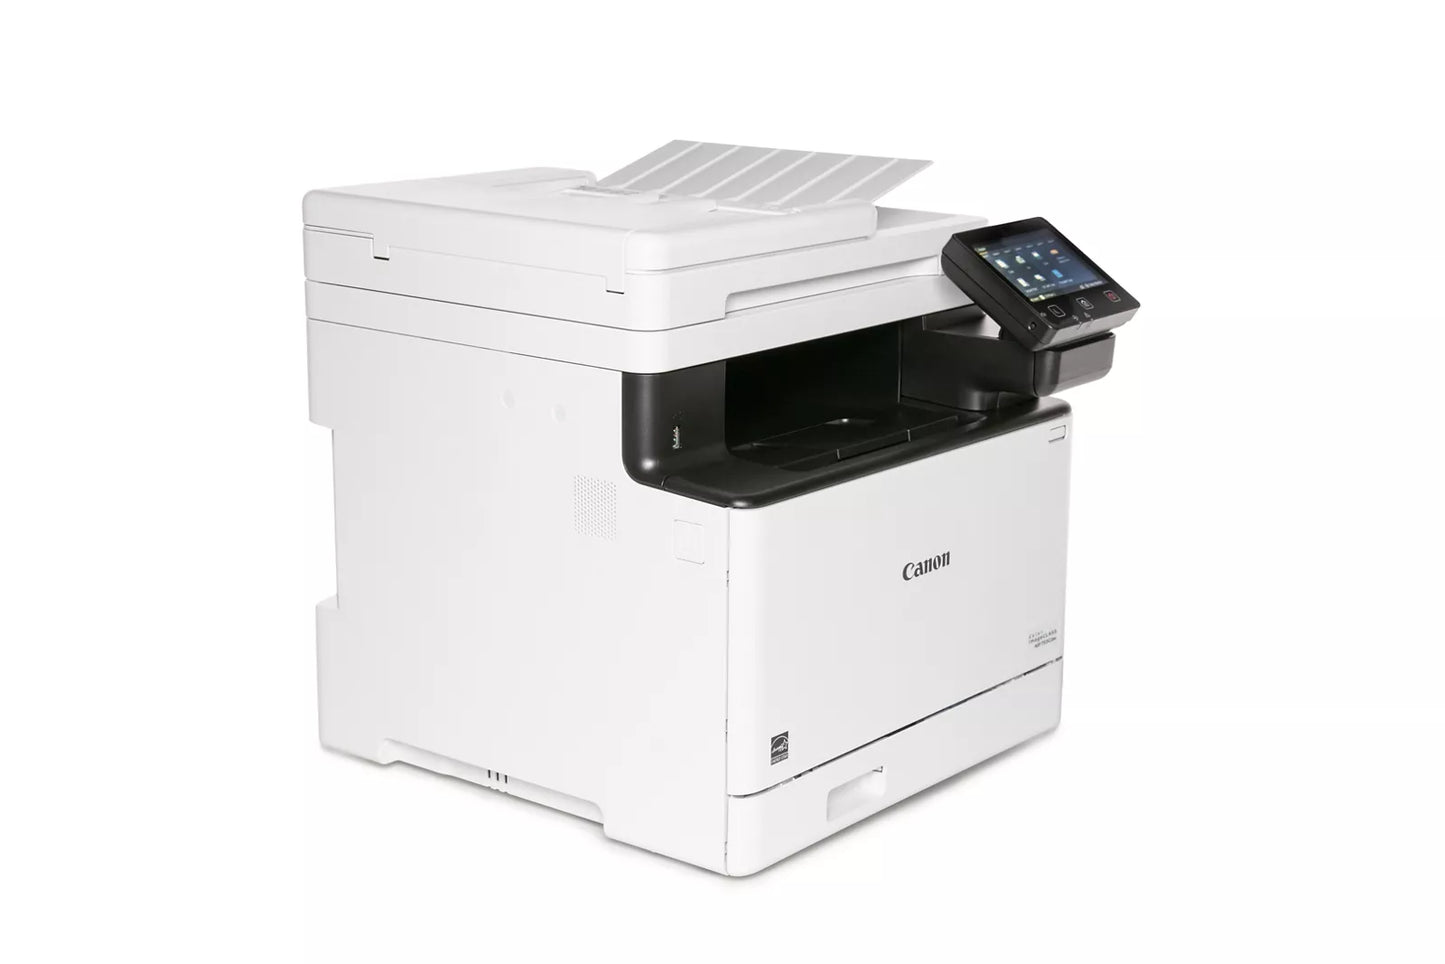 Canon imageCLASS MF753Cdw - All-in-One, Wireless, Duplex Color Laser Printer